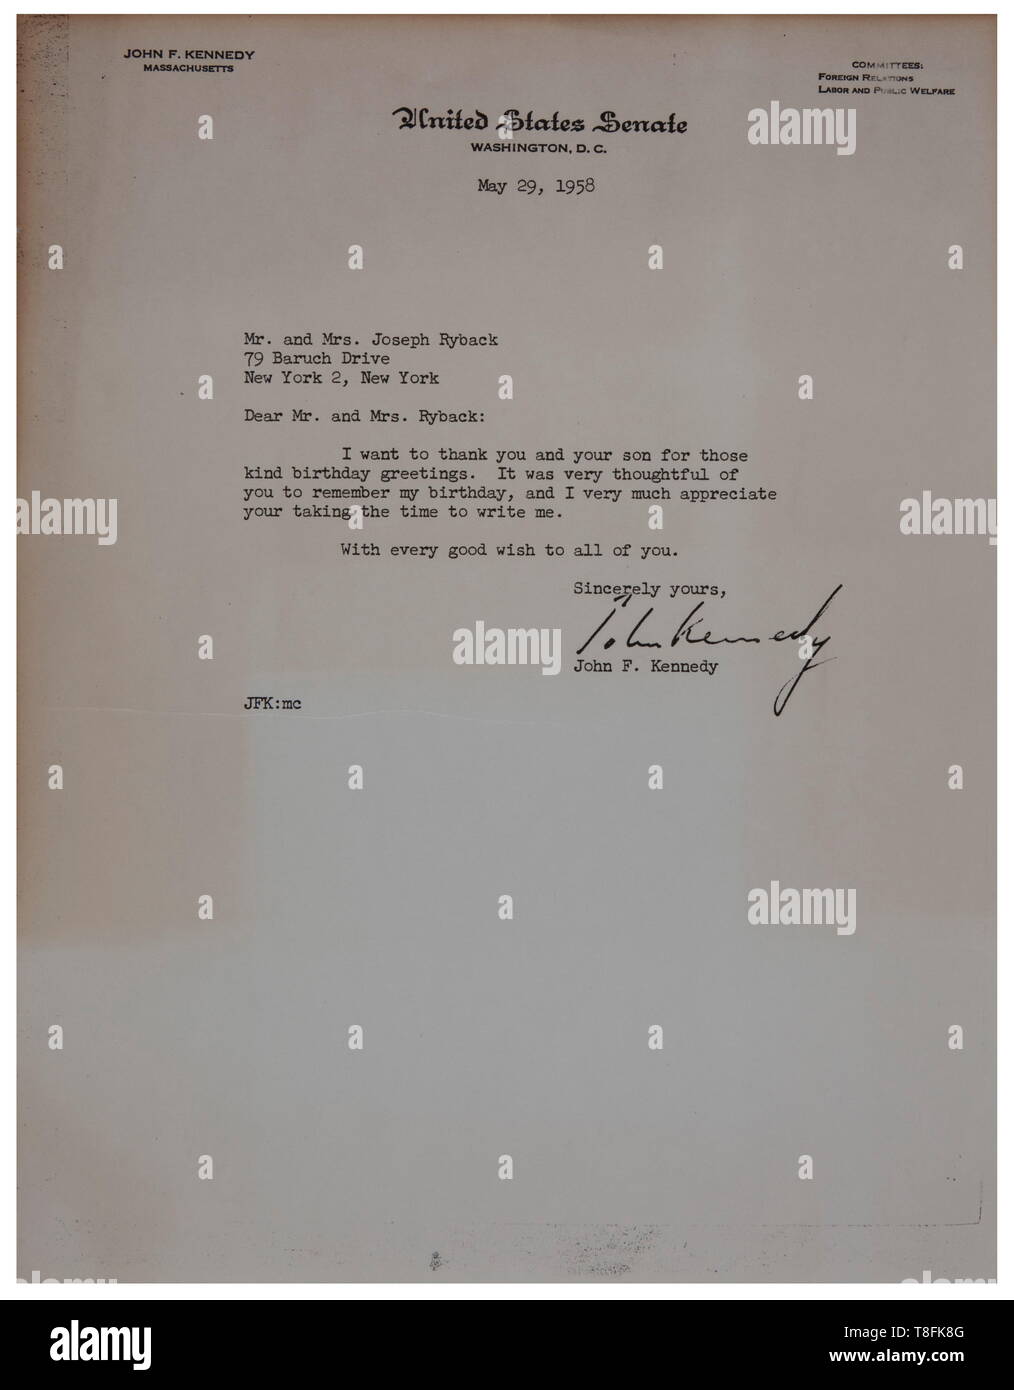 John-F.-Kennedy-Schreiben vom 30. Mai 30 in den US-Senat